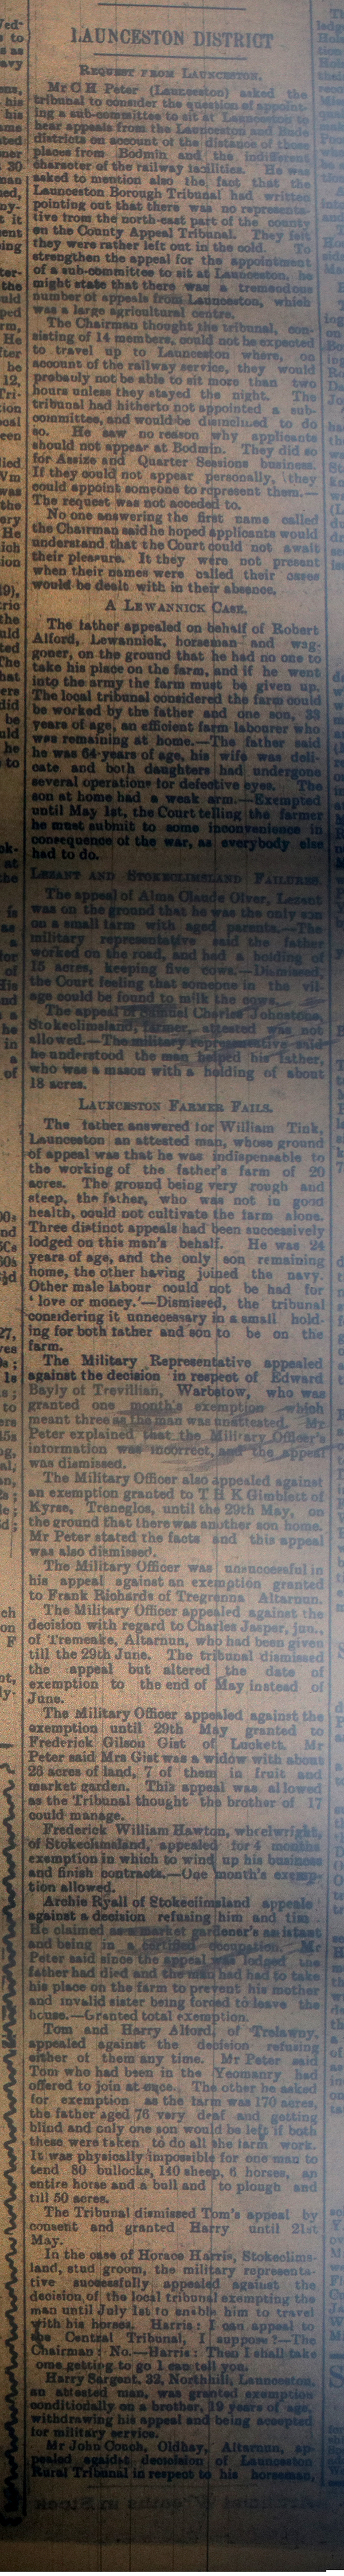 Launceston Tribunal March 25th, 1916